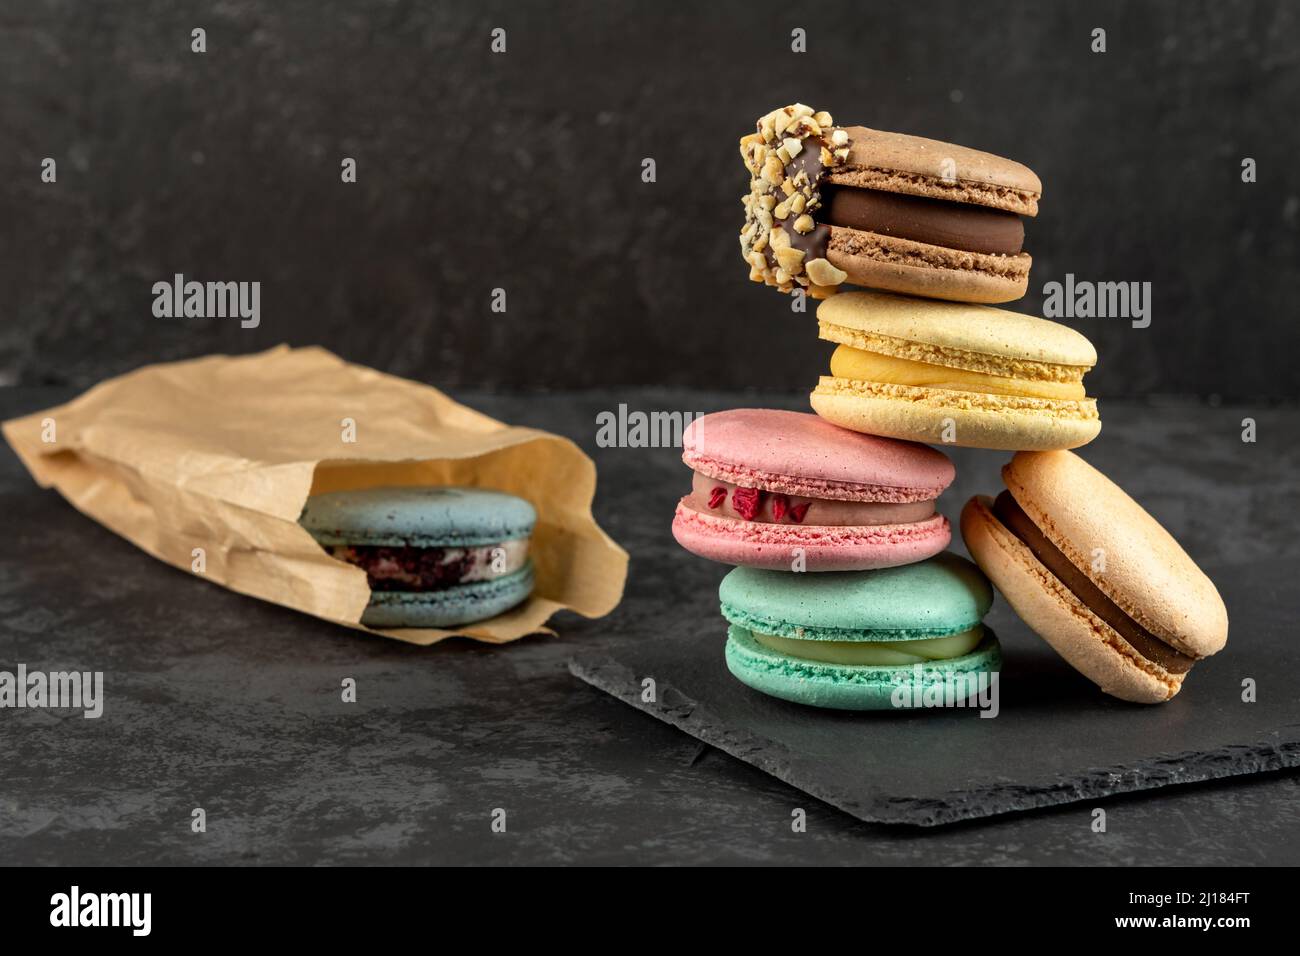 Macarons empilés sur un fond sombre. Délicieux dessert de cuisine française décoré de façon créative sur fond sombre Banque D'Images